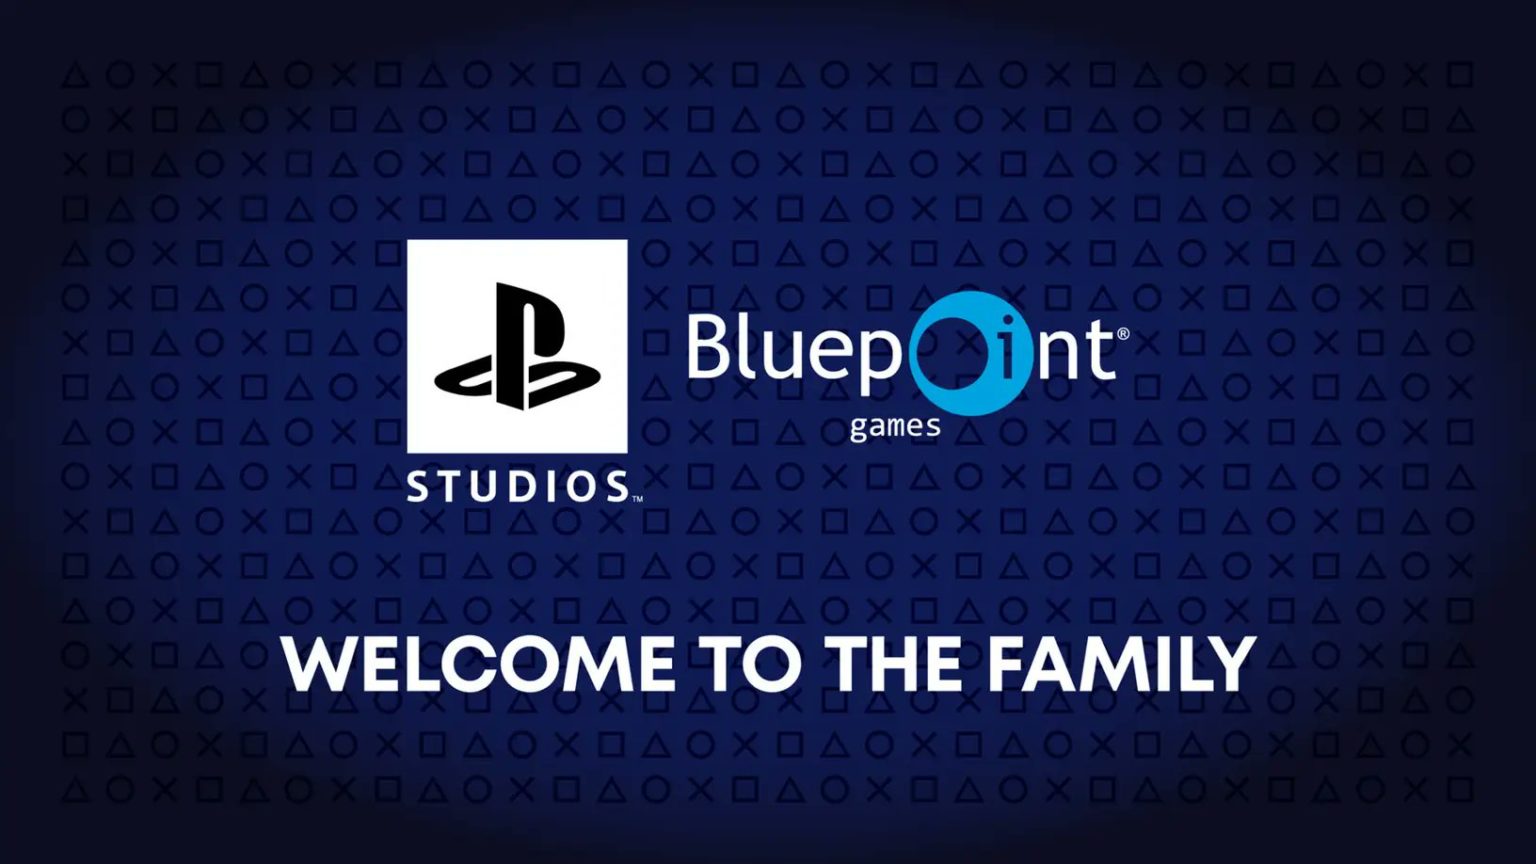 Sony ha acquisito Bluepoint Games e ha annunciato il sedicesimo sviluppatore per PlayStation Studios.